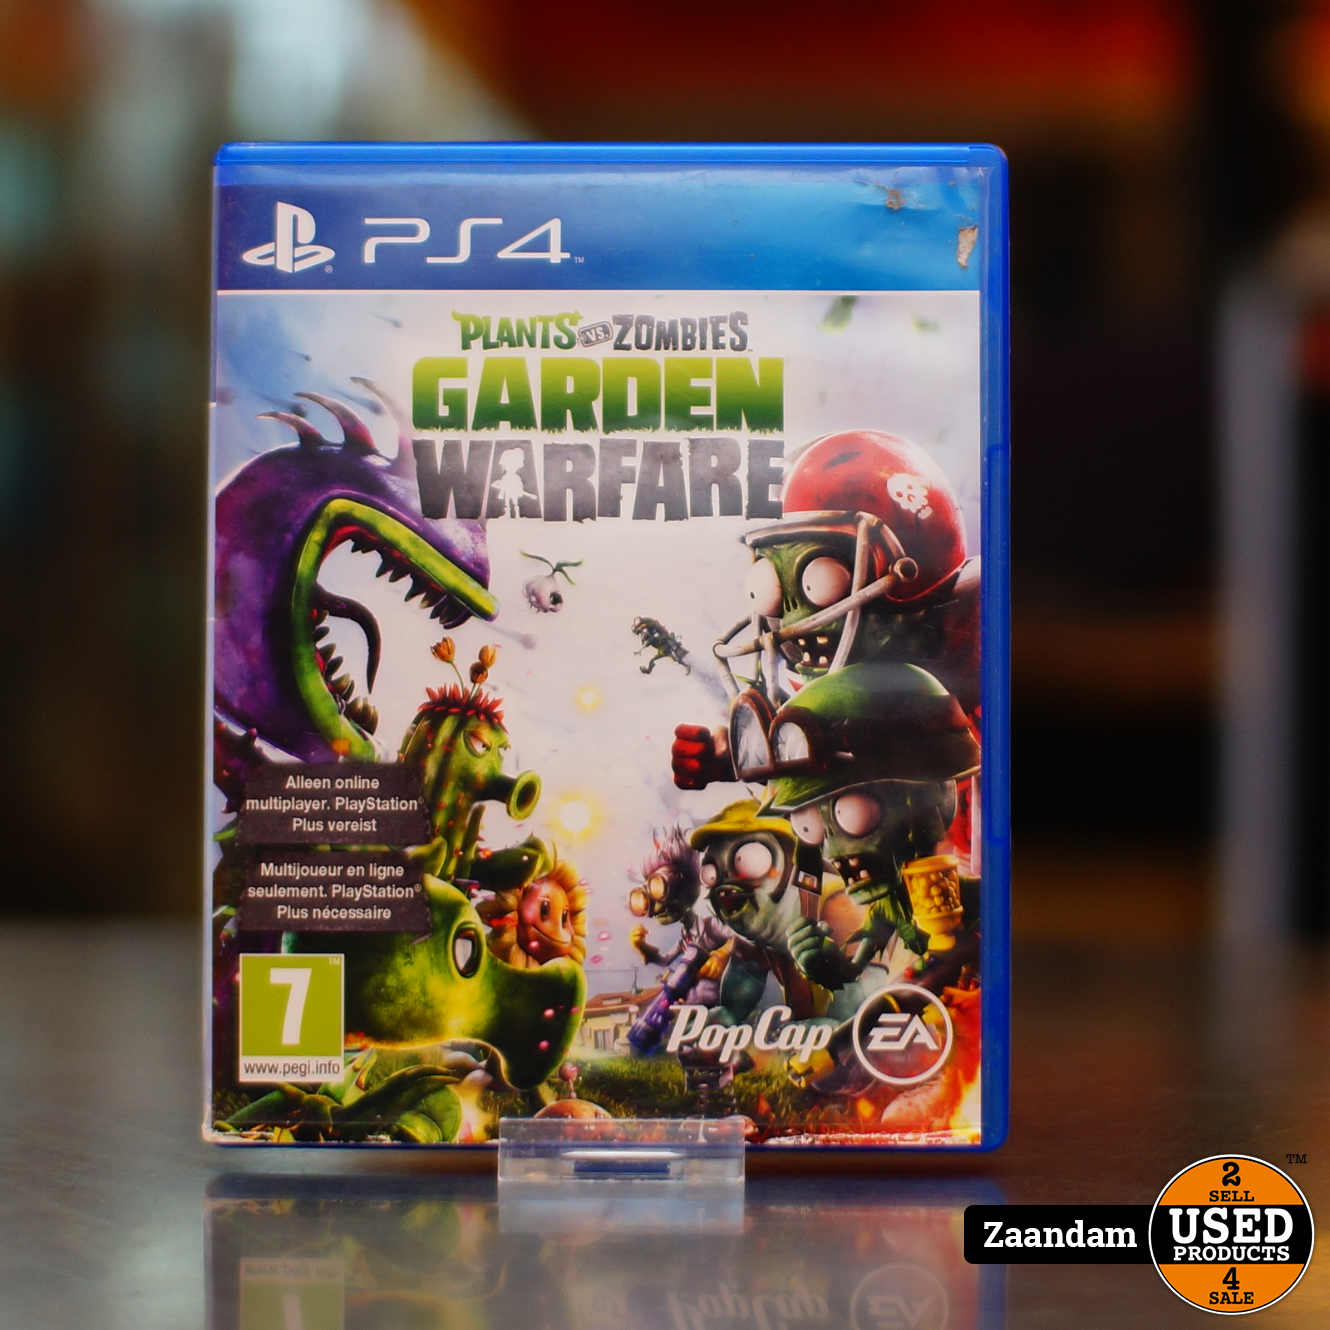 verlies uzelf film Oneerlijk Playstation 4 game: Plants vs Zombies Garden Warfare - Used Products Zaandam